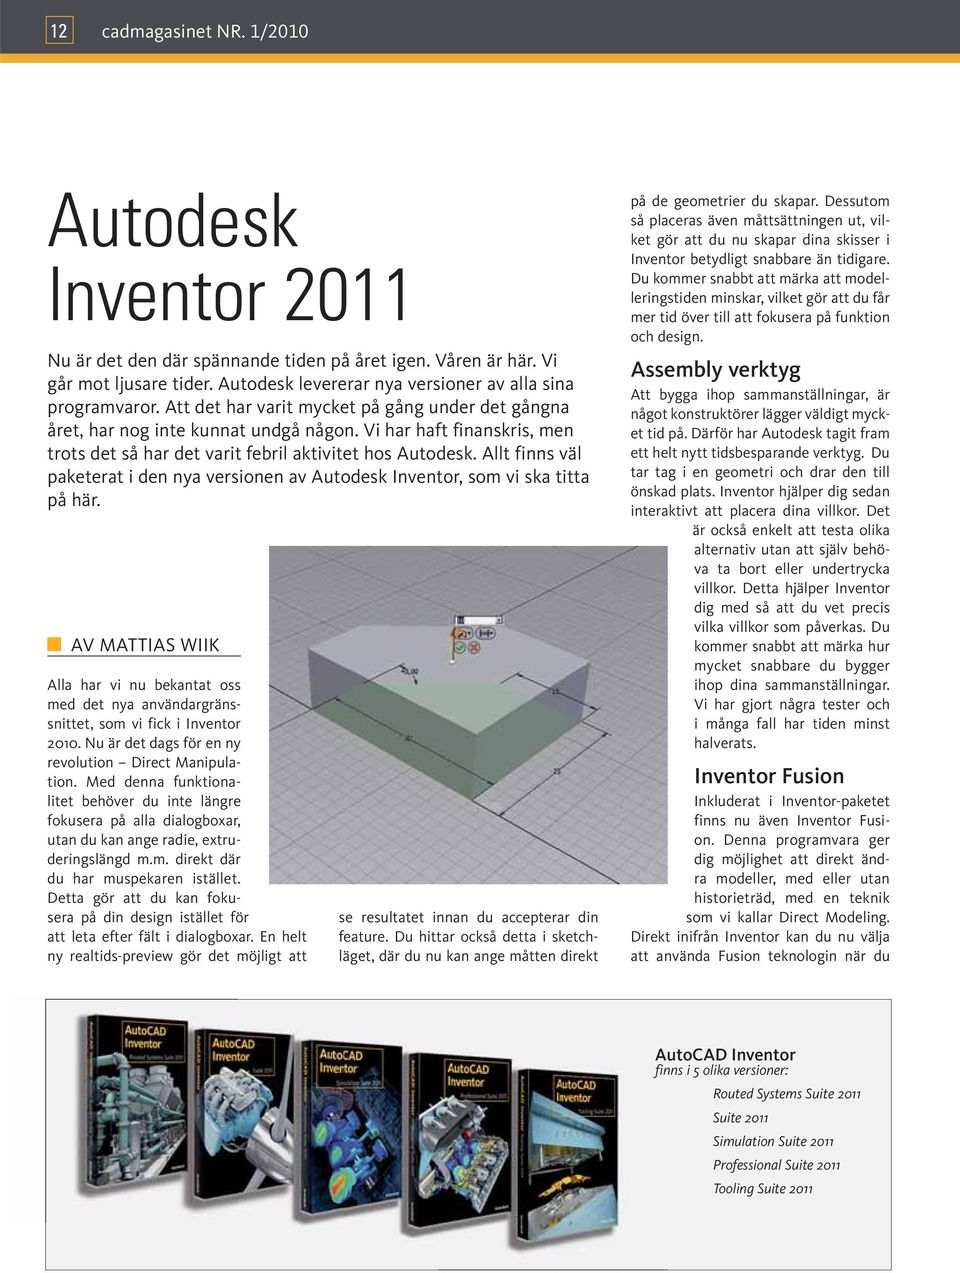 Allt finns väl paketerat i den nya versionen av Autodesk Inventor, som vi ska titta på här. AV MATTIAS WIIK Alla har vi nu bekantat oss med det nya användargränssnittet, som vi fick i Inventor 2010.